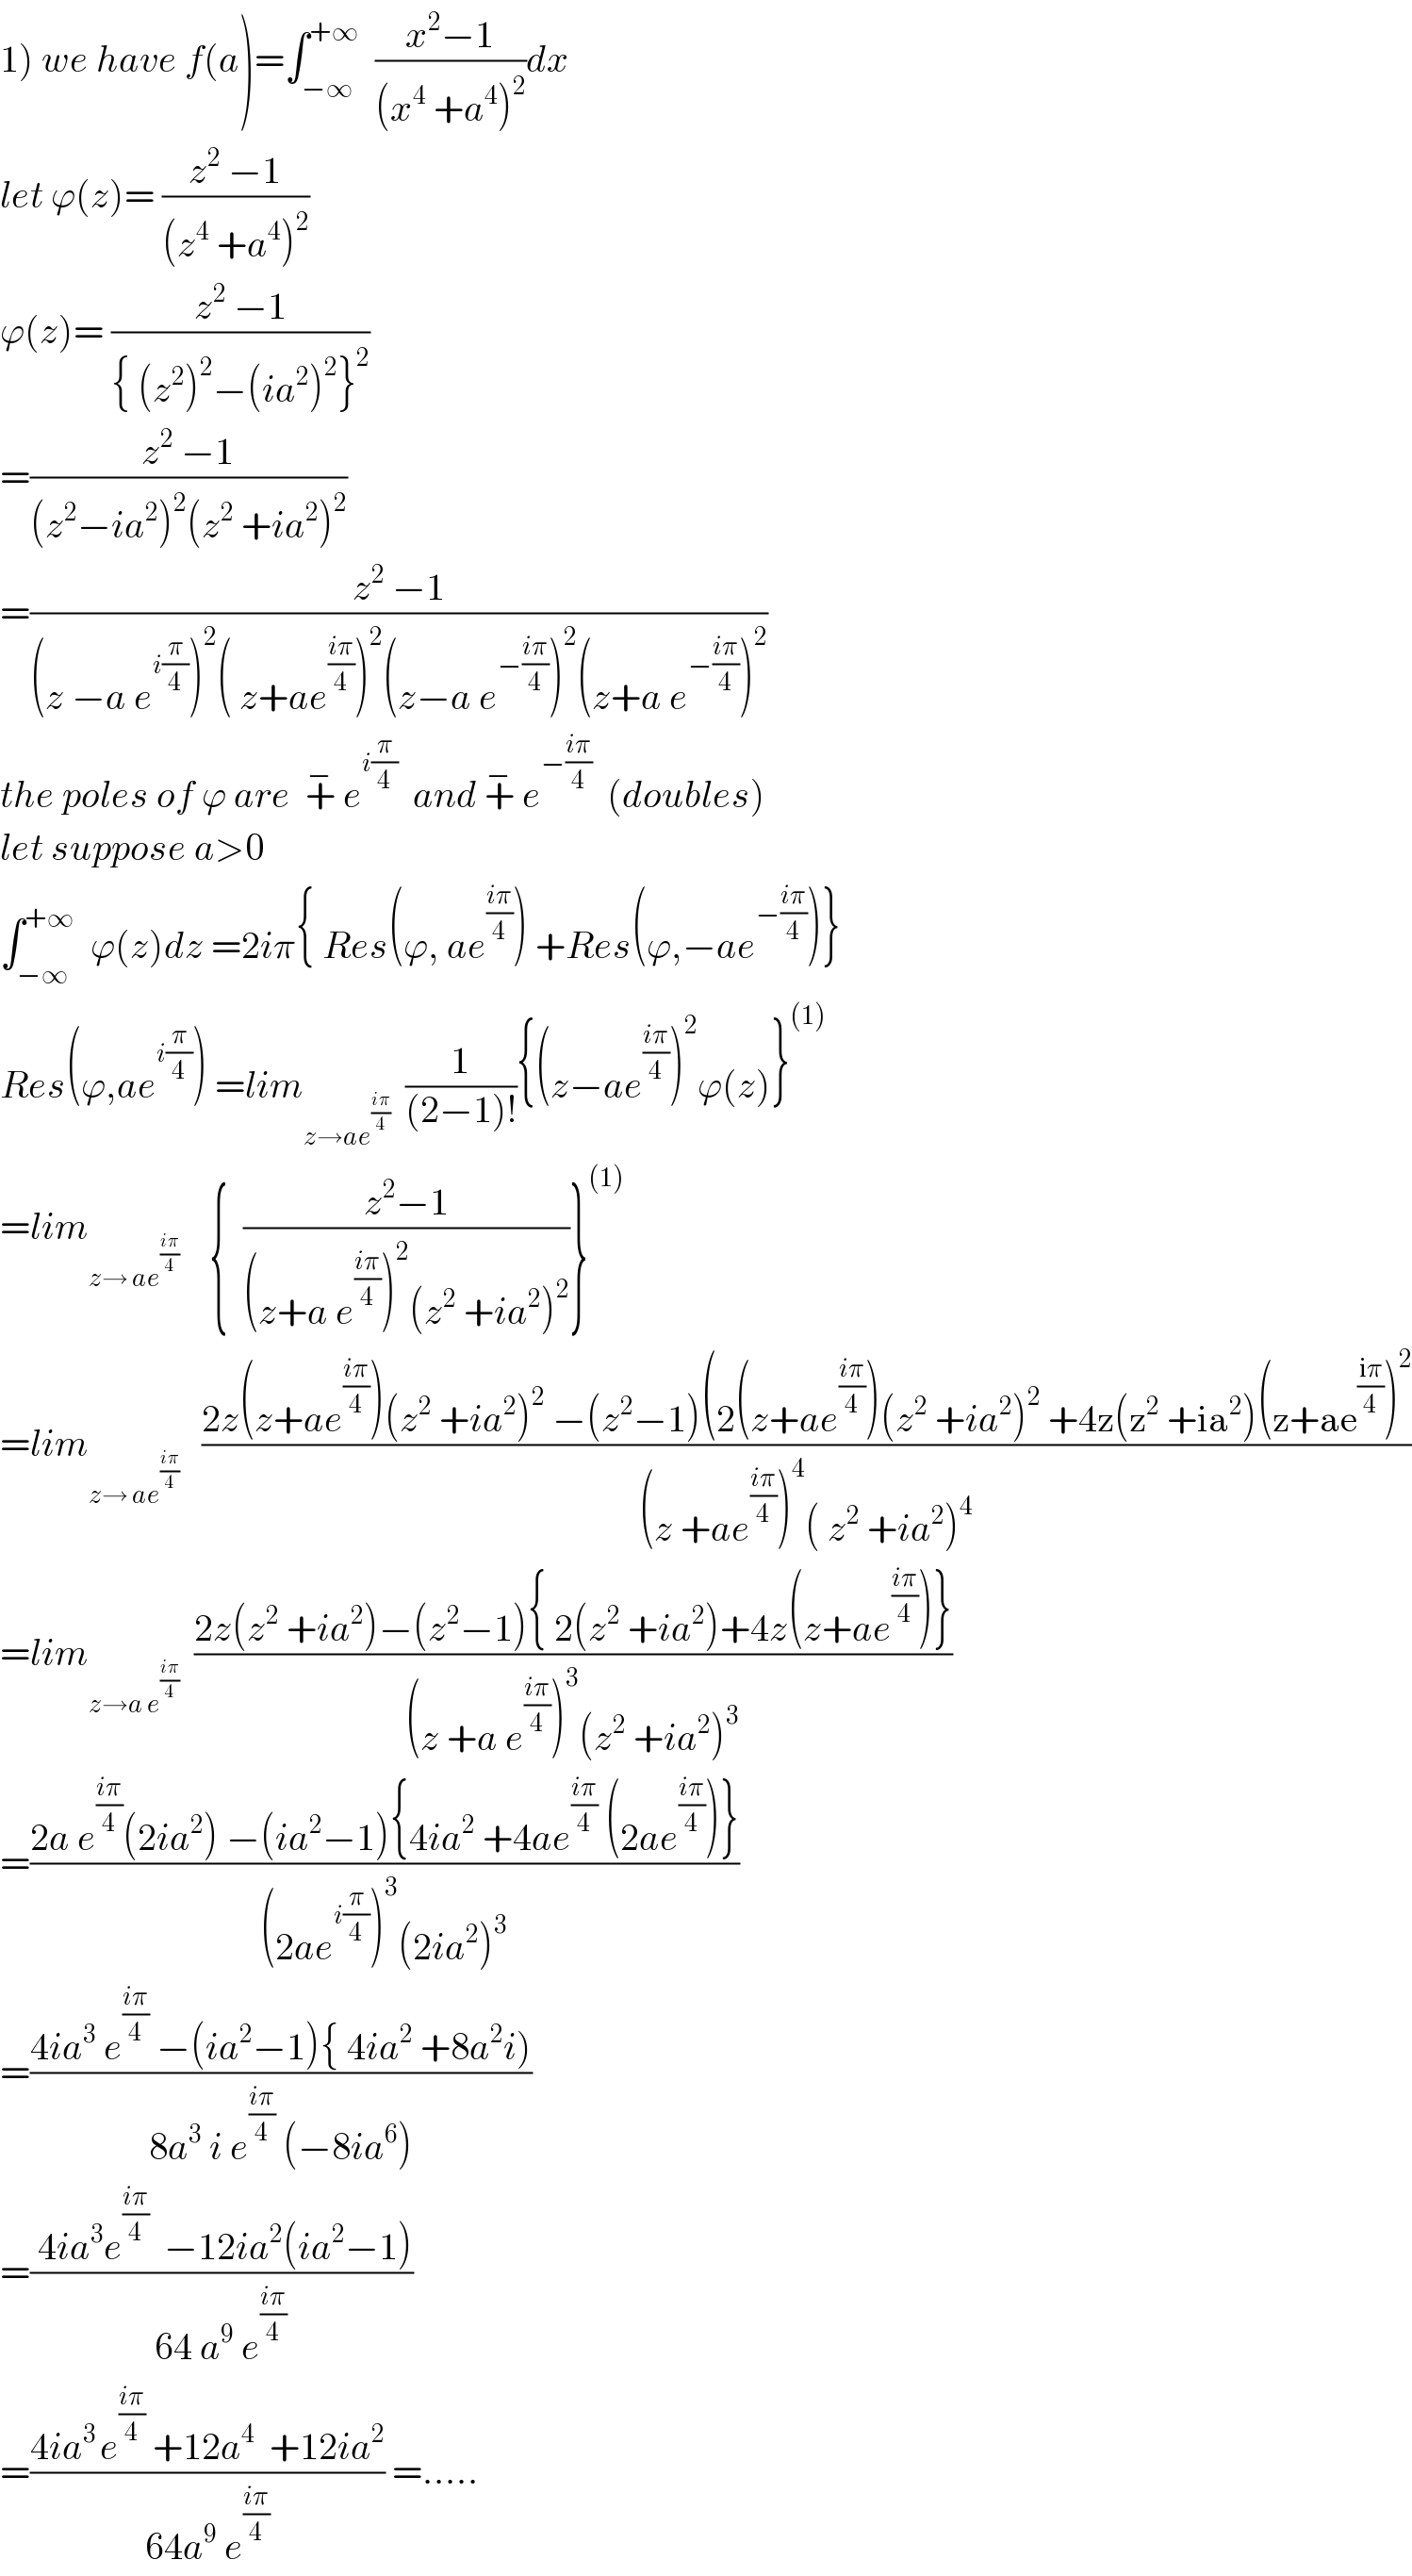 1) we have f(a)=∫_(−∞) ^(+∞)   ((x^2 −1)/((x^4  +a^4 )^2 ))dx  let ϕ(z)= ((z^2  −1)/((z^4  +a^4 )^2 ))  ϕ(z)= ((z^2  −1)/({ (z^2 )^2 −(ia^2 )^2 }^2 ))  =((z^2  −1)/((z^2 −ia^2 )^2 (z^2  +ia^2 )^2 ))  =((z^2  −1)/((z −a e^(i(π/4)) )^2 ( z+ae^((iπ)/4) )^2 (z−a e^(−((iπ)/4)) )^2 (z+a e^(−((iπ)/4)) )^2 ))  the poles of ϕ are  +^−  e^(i(π/4))   and +^−  e^(−((iπ)/4))   (doubles)  let suppose a>0  ∫_(−∞) ^(+∞)   ϕ(z)dz =2iπ{ Res(ϕ, ae^((iπ)/4) ) +Res(ϕ,−ae^(−((iπ)/4)) )}  Res(ϕ,ae^(i(π/4)) ) =lim_(z→ae^((iπ)/4) )   (1/((2−1)!)){(z−ae^((iπ)/4) )^2 ϕ(z)}^((1))   =lim_(z→ ae^((iπ)/4) )     {  ((z^2 −1)/((z+a e^((iπ)/4) )^2 (z^2  +ia^2 )^2 ))}^((1))   =lim_(z→ ae^((iπ)/4) )    ((2z(z+ae^((iπ)/4) )(z^2  +ia^2 )^2  −(z^2 −1)(2(z+ae^((iπ)/4) )(z^2  +ia^2 )^2  +4z(z^2  +ia^2 )(z+ae^((iπ)/4) )^2 )/((z +ae^((iπ)/4) )^4 ( z^2  +ia^2 )^4 ))  =lim_(z→a e^((iπ)/4) )   ((2z(z^2  +ia^2 )−(z^2 −1){ 2(z^2  +ia^2 )+4z(z+ae^((iπ)/4) )})/((z +a e^((iπ)/4) )^3 (z^2  +ia^2 )^3 ))  =((2a e^((iπ)/4) (2ia^2 ) −(ia^2 −1){4ia^2  +4ae^((iπ)/4)  (2ae^((iπ)/4) )})/((2ae^(i(π/4)) )^3 (2ia^2 )^3 ))  =((4ia^3  e^((iπ)/4)  −(ia^2 −1){ 4ia^2  +8a^2 i))/(8a^3  i e^((iπ)/4)  (−8ia^6 )))  =(( 4ia^3 e^((iπ)/4)   −12ia^2 (ia^2 −1))/(64 a^9  e^((iπ)/4) ))  =((4ia^(3 ) e^((iπ)/4)  +12a^4   +12ia^2 )/(64a^9  e^((iπ)/4) )) =.....  